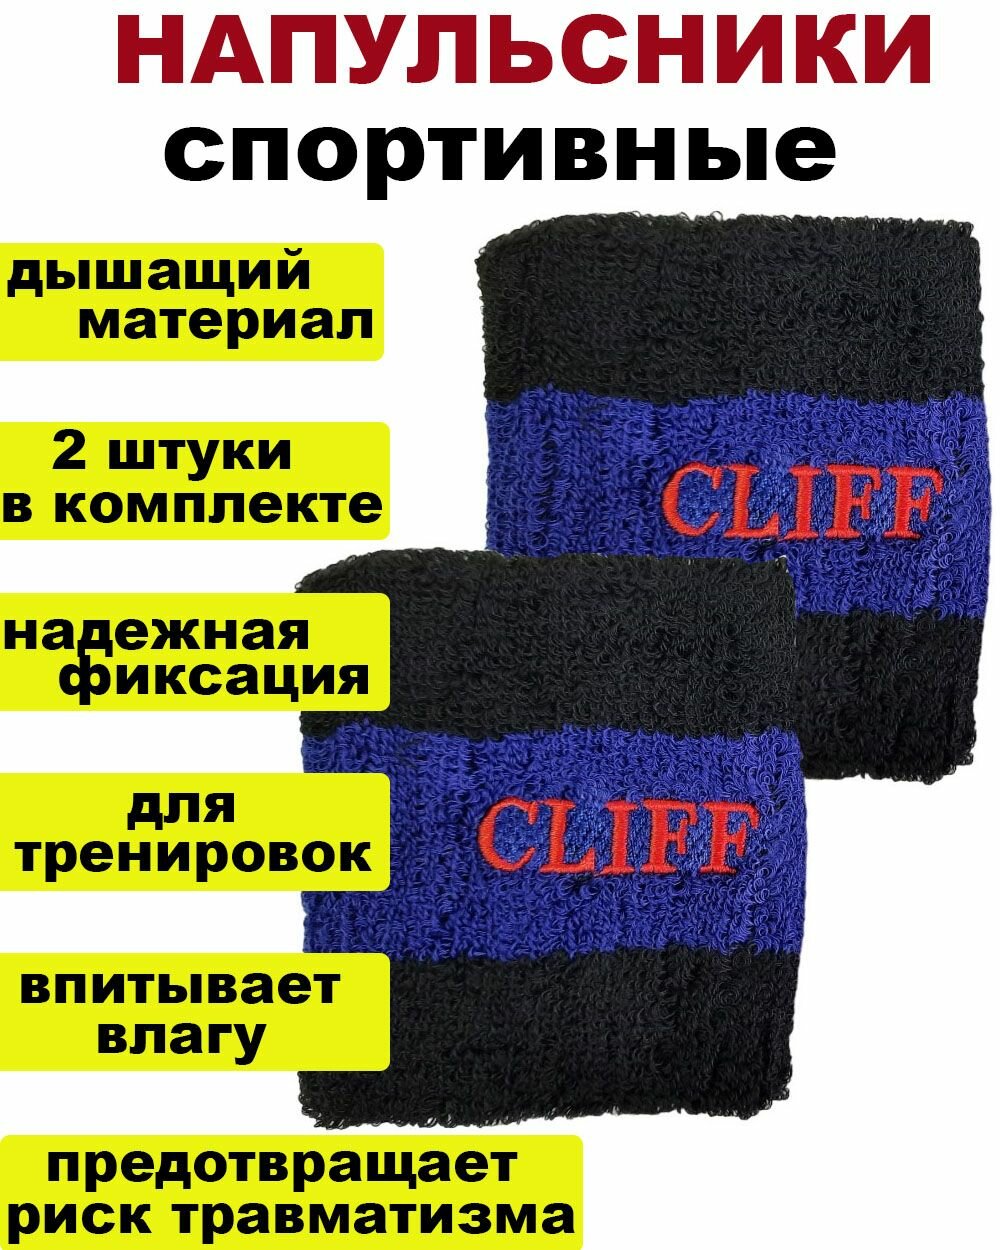 Напульсники спортивный на запястье Cliff 142-2В - черно-синие / 2шт